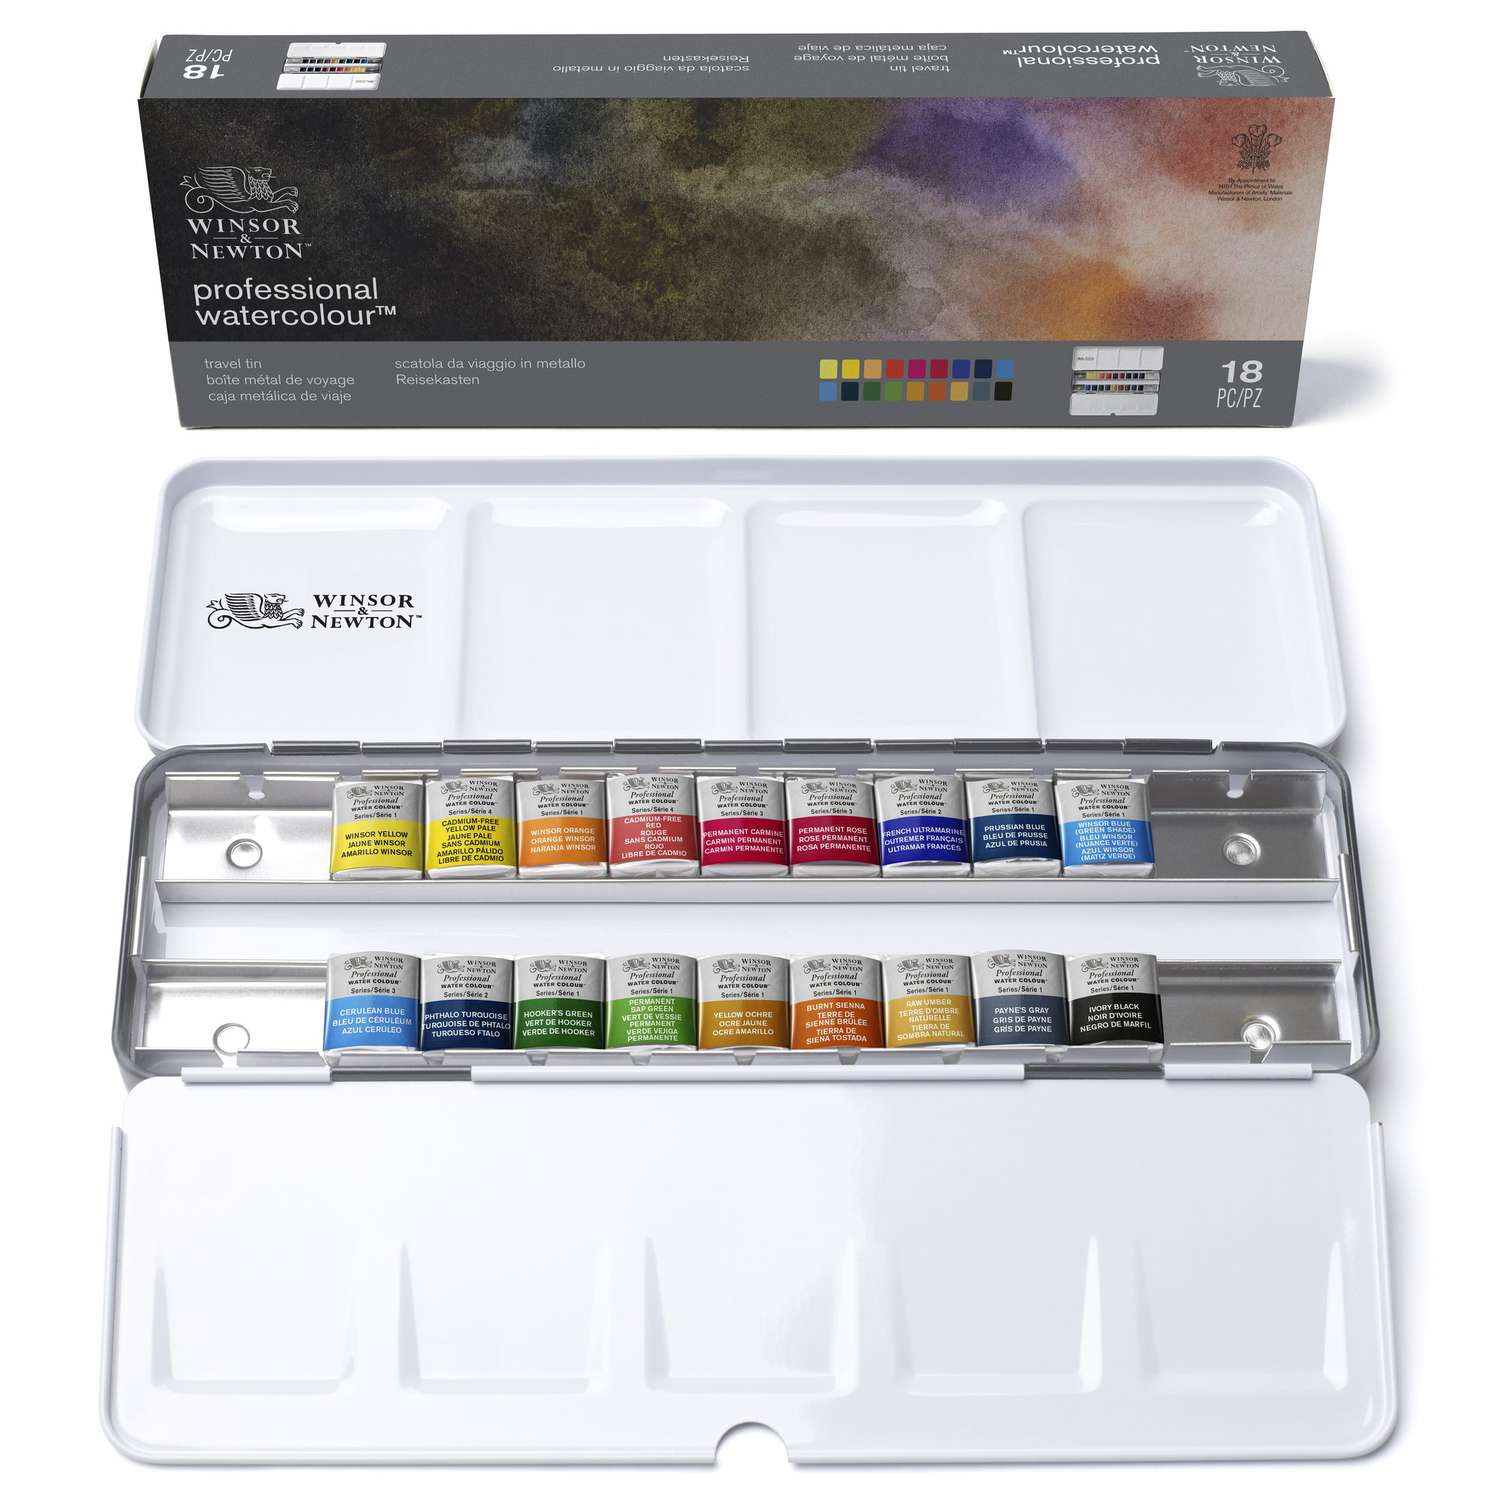 Coffret aquarelle Professional Water Colour™ Winsor et Newton  Le Géant  des Beaux-Arts - No 1 de la vente en ligne de matériels pour Artistes